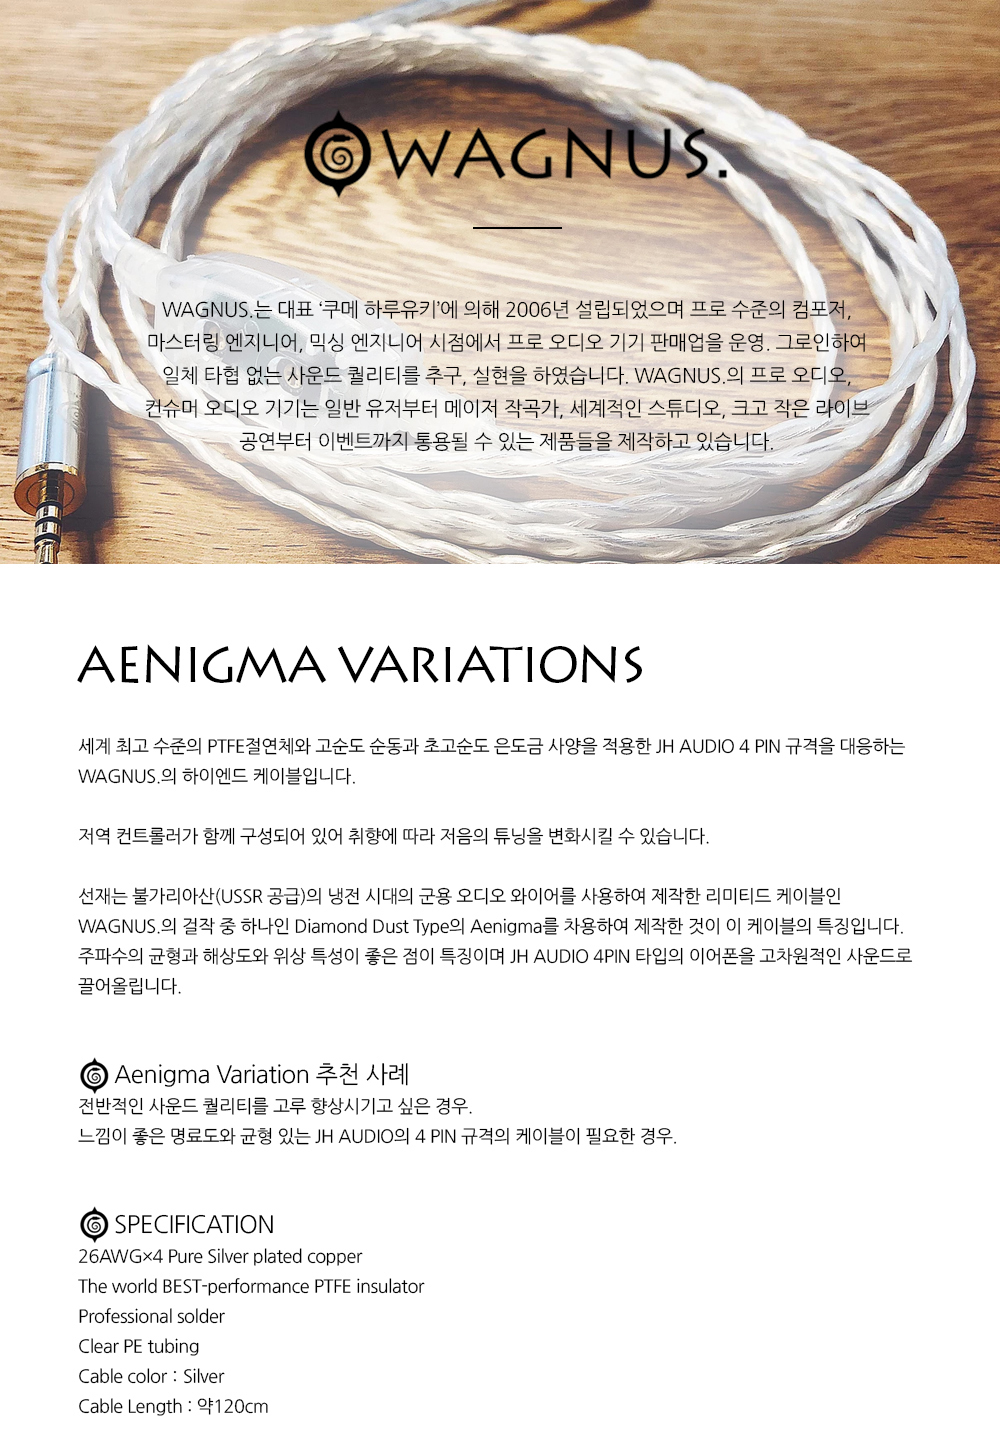 2023在庫 WAGNUS. aenigma Variations for JH AUDIO VC re:Cable 3.5mm